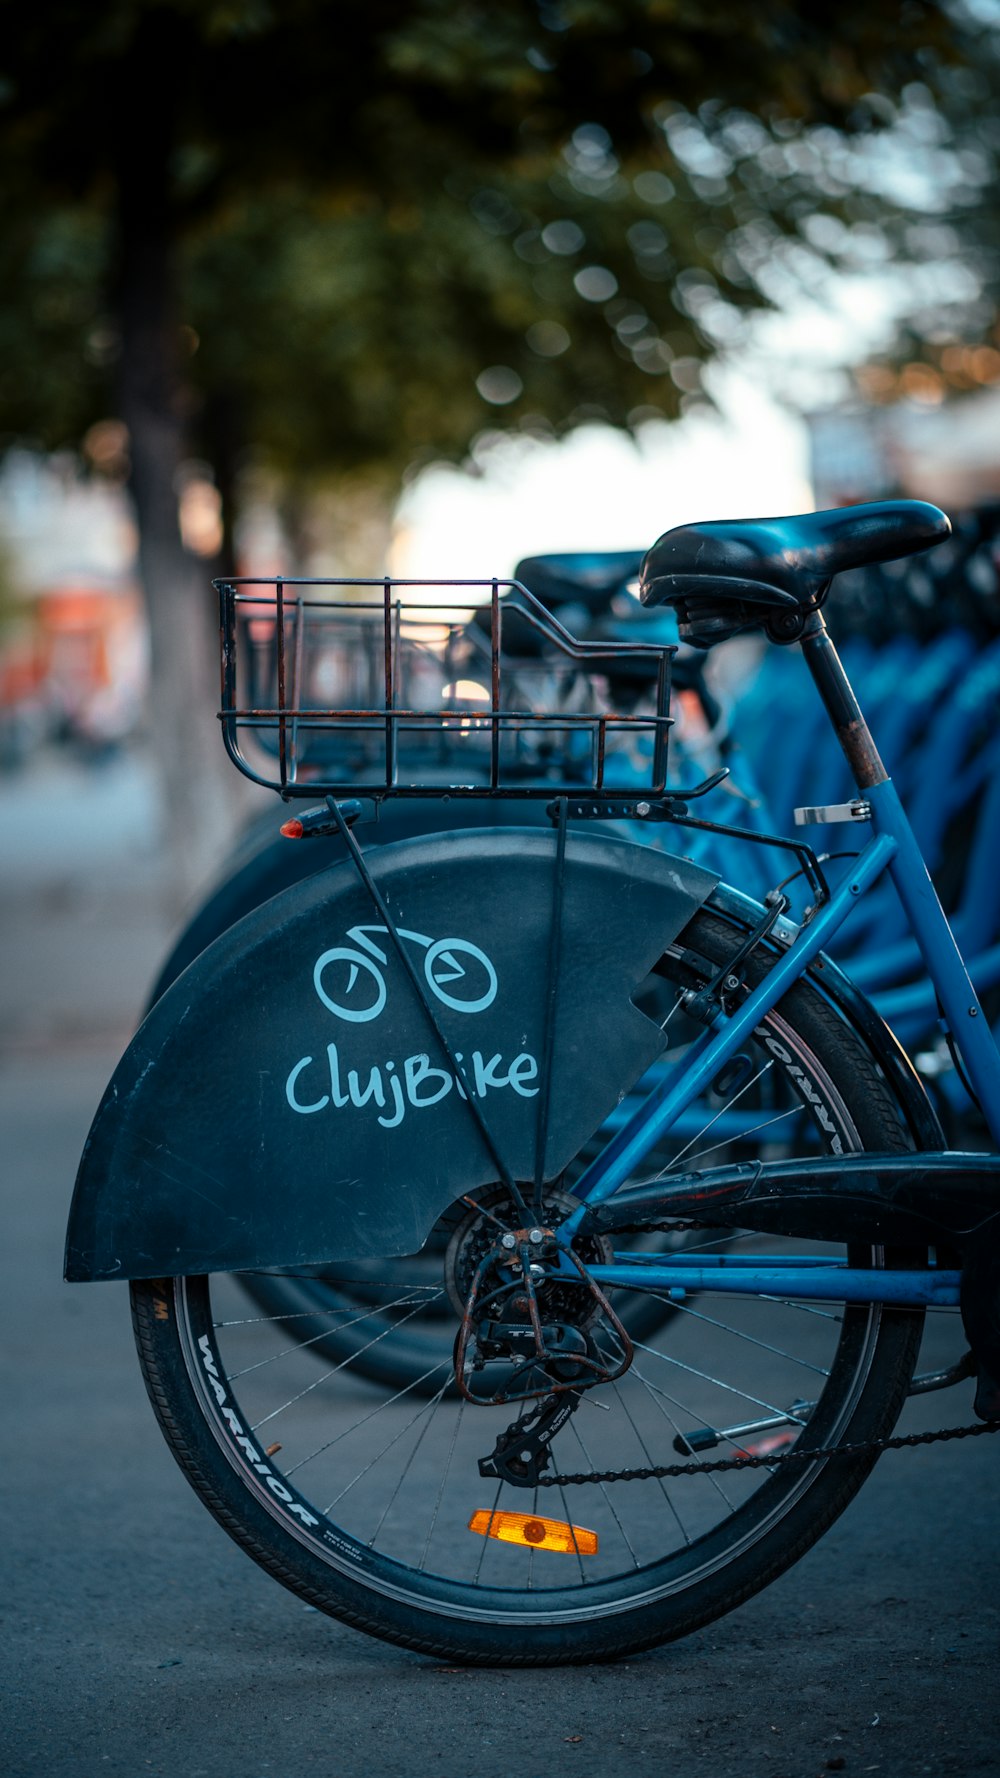 Bicicleta ClujBike azul y negra